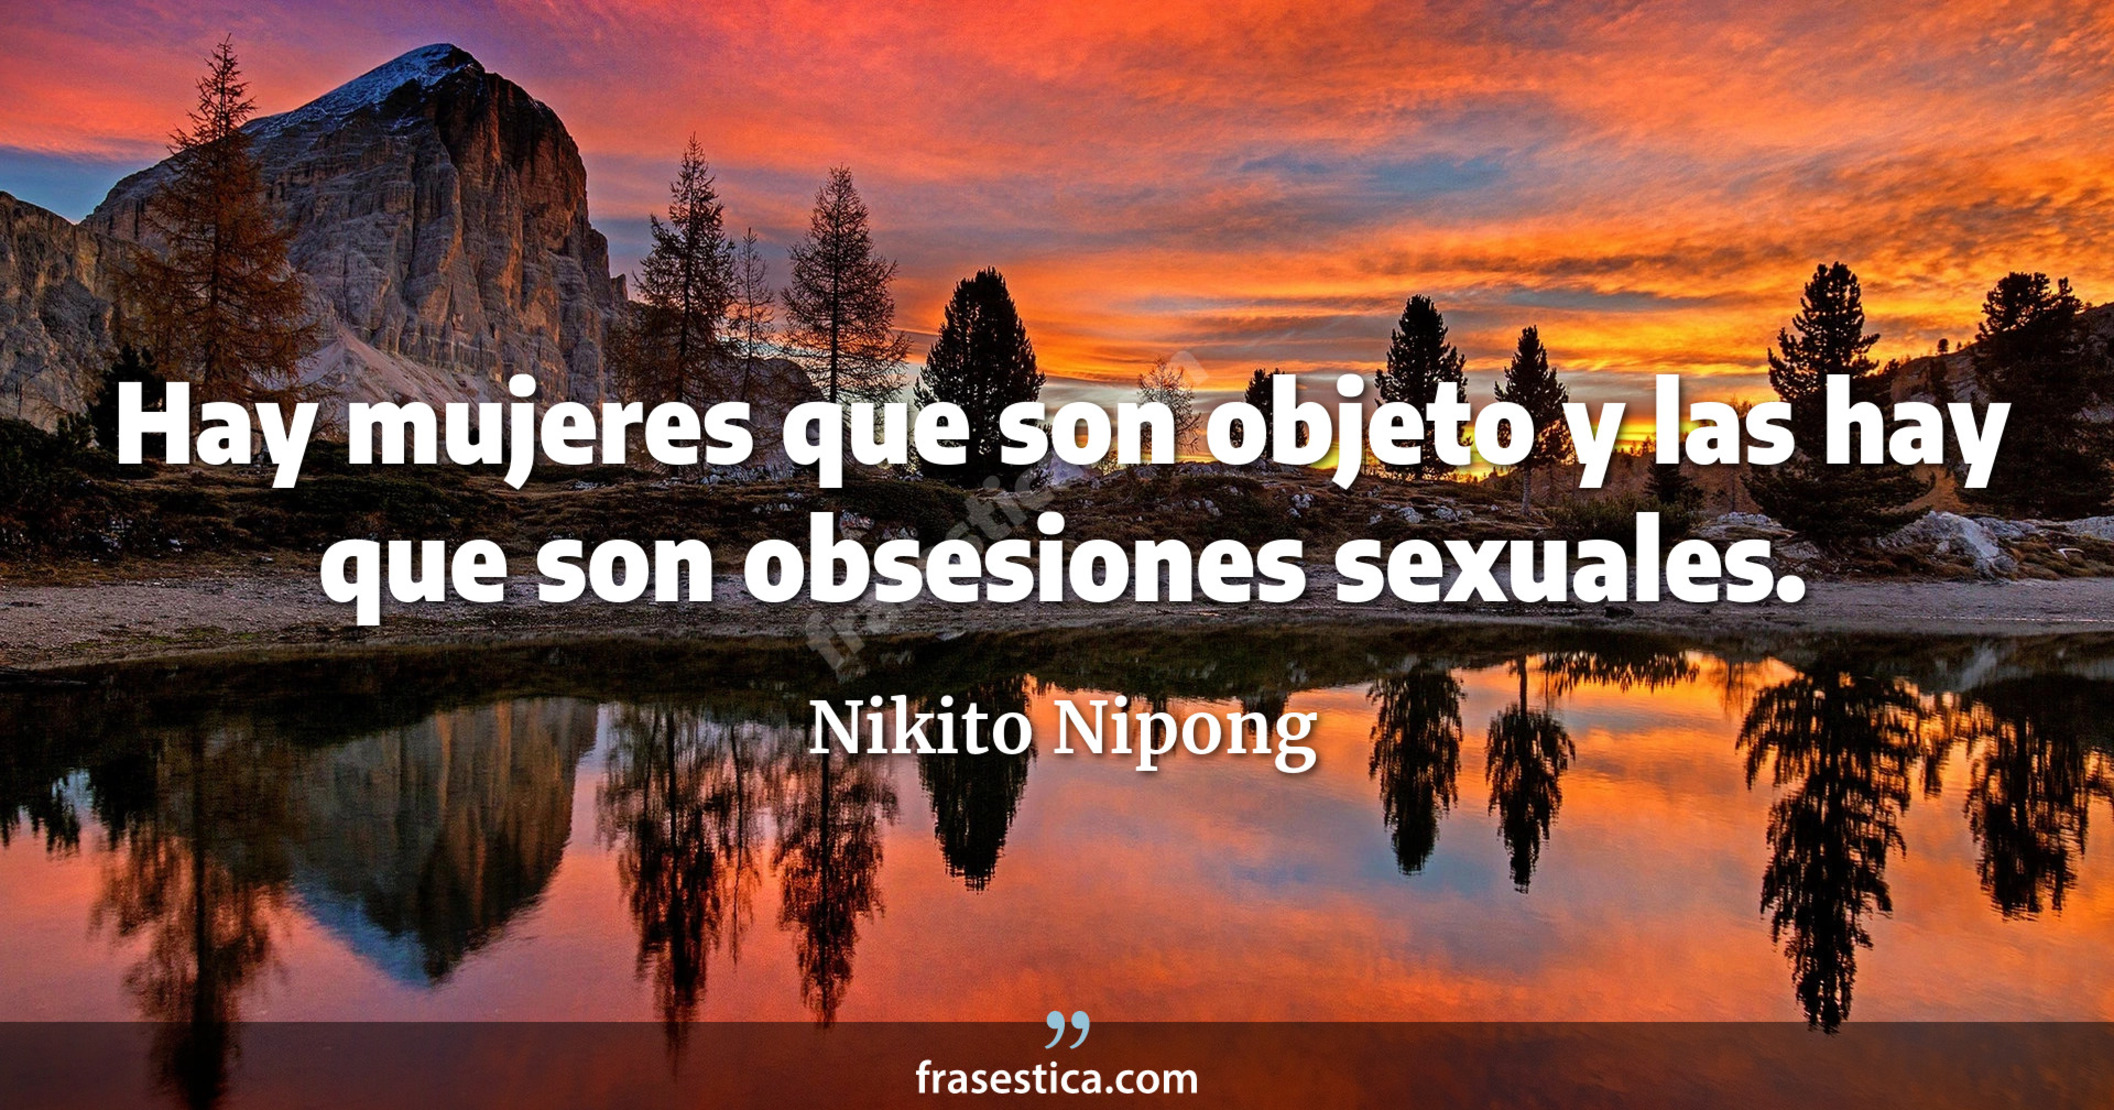 Hay mujeres que son objeto y las hay que son obsesiones sexuales. - Nikito Nipong